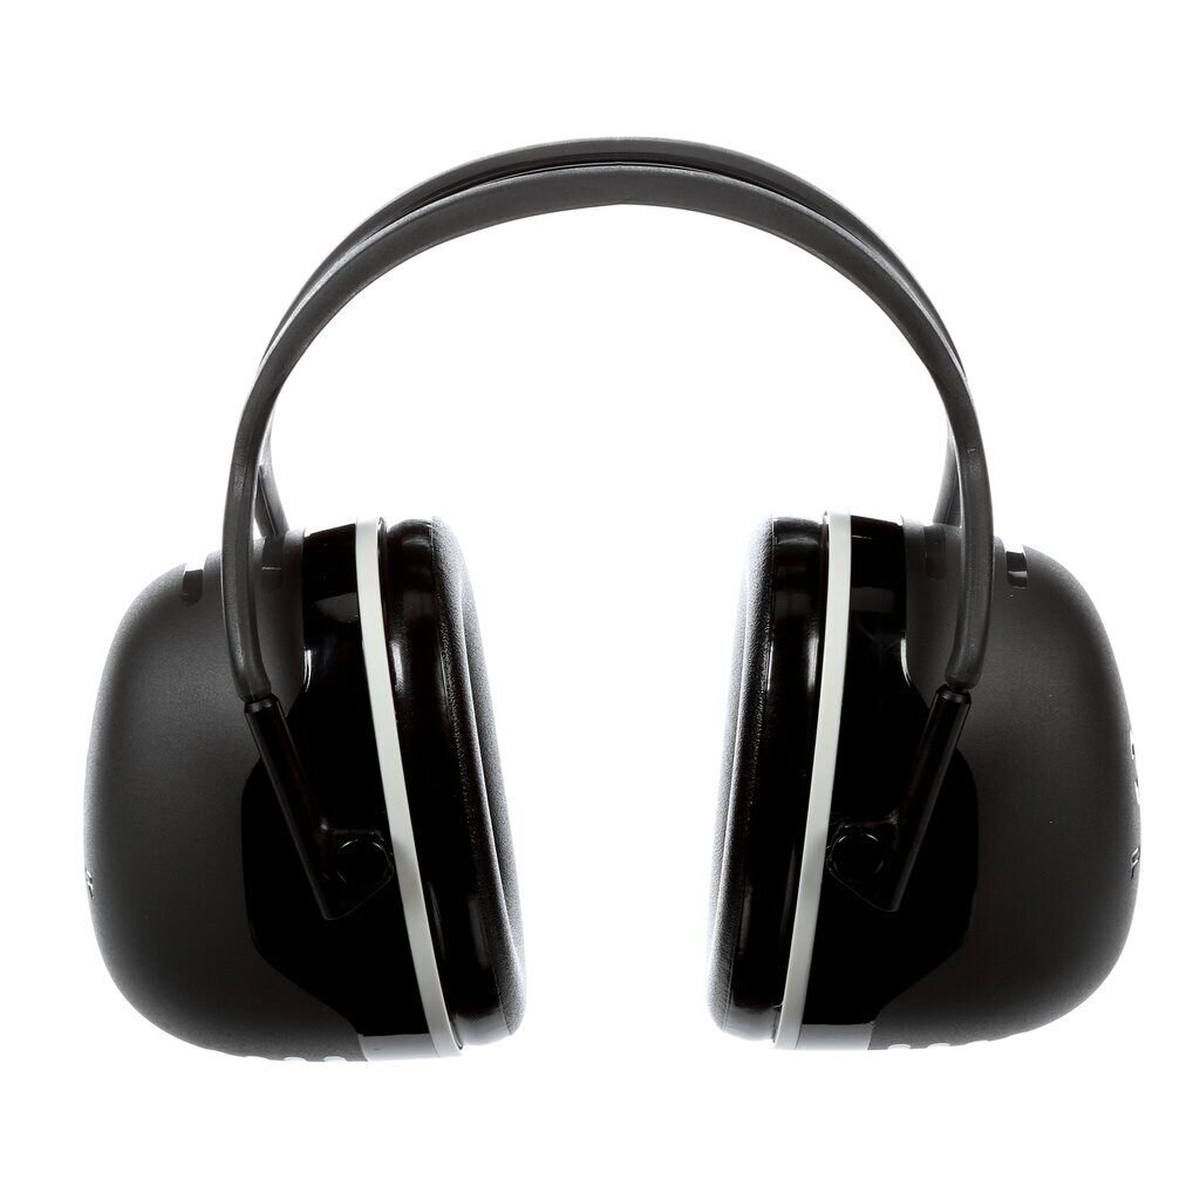 3M Peltor Kapselgehörschutz, X5A Kopfbügel, schwarz, SNR = 37 dB